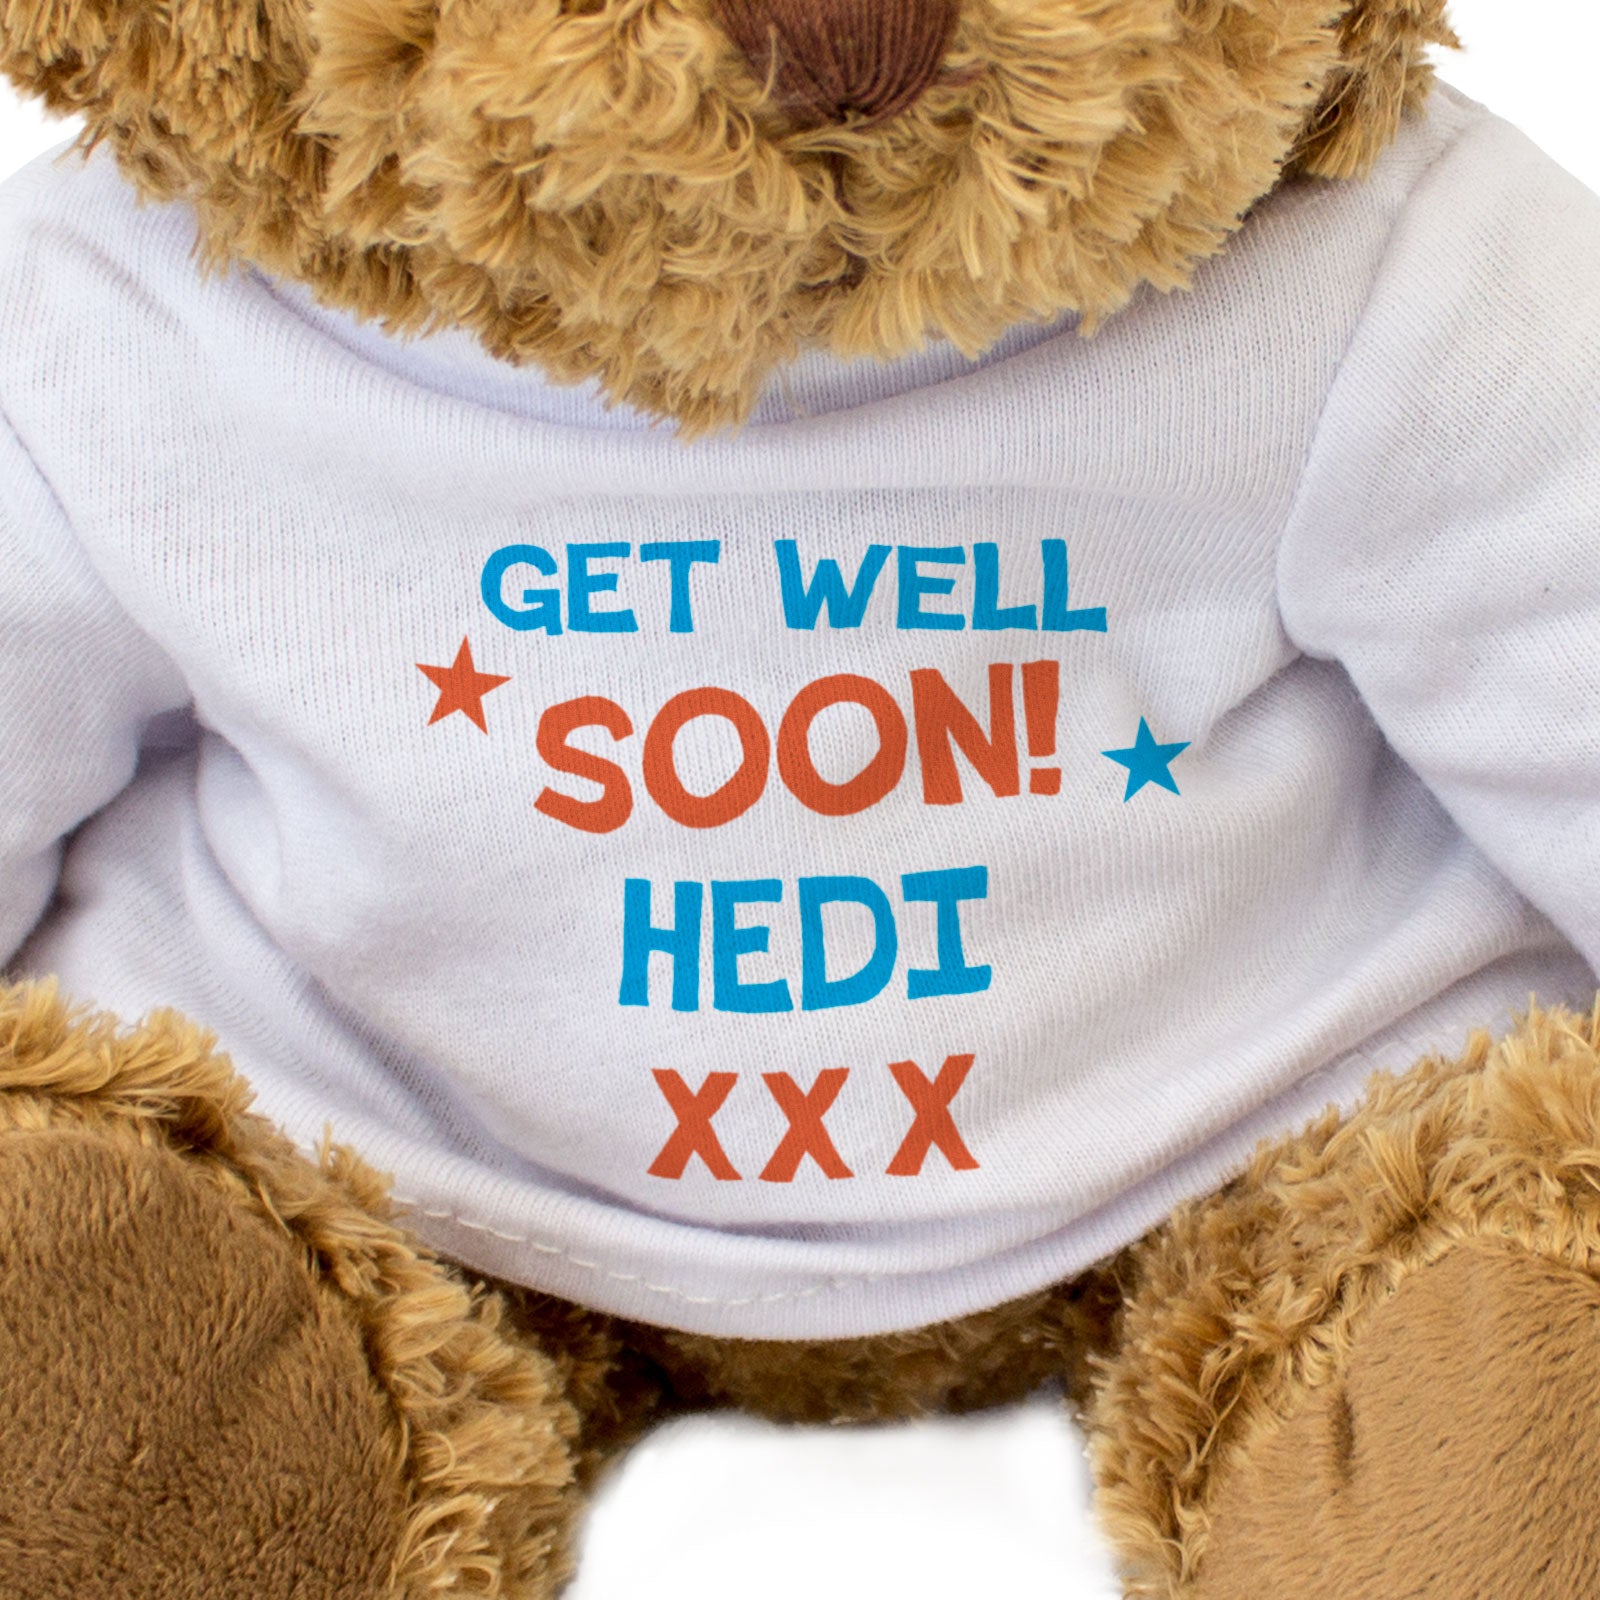 Get Well Soon Hedi - Teddy Bear